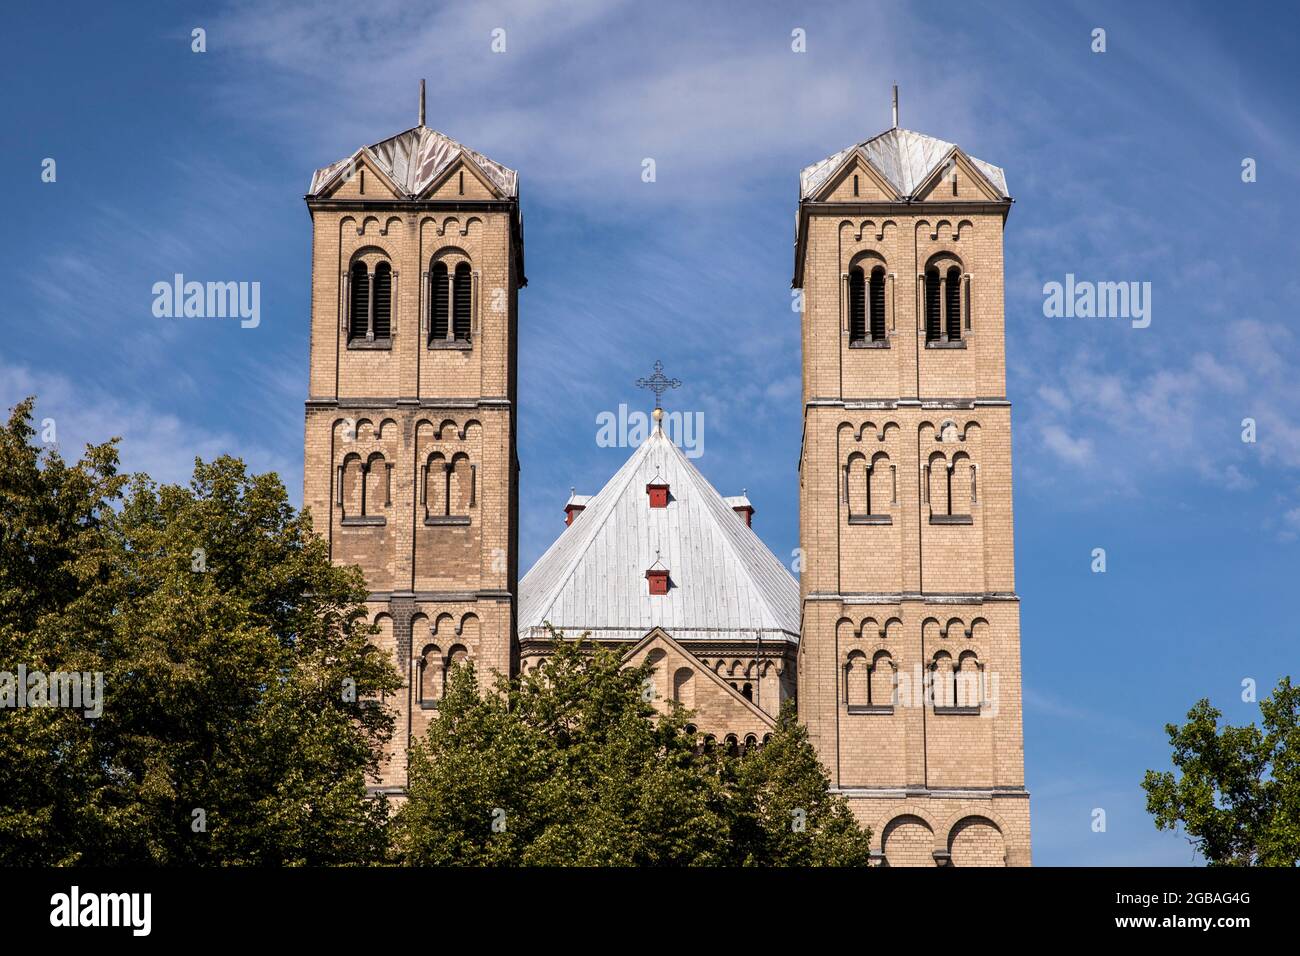 the romanesque church St. Gereon, Cologne, Germany.  die romanische Kirche St. Gereon, Koeln, Deutschland. Stock Photo